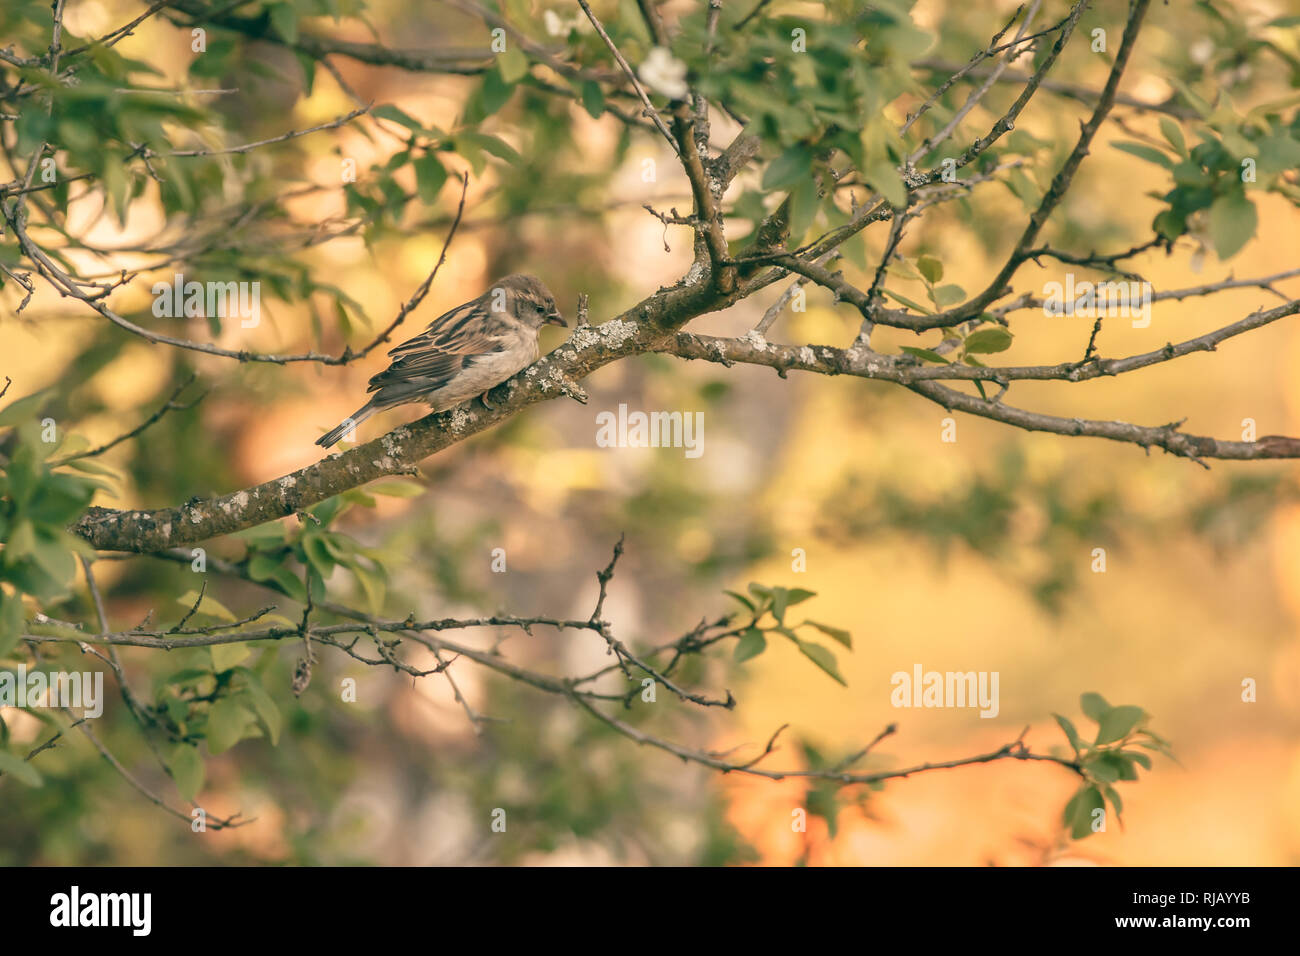 Ein Spatz (Passer domesticus) im Baum sonnt sich im warmen Sonnenlicht, Foto Stock